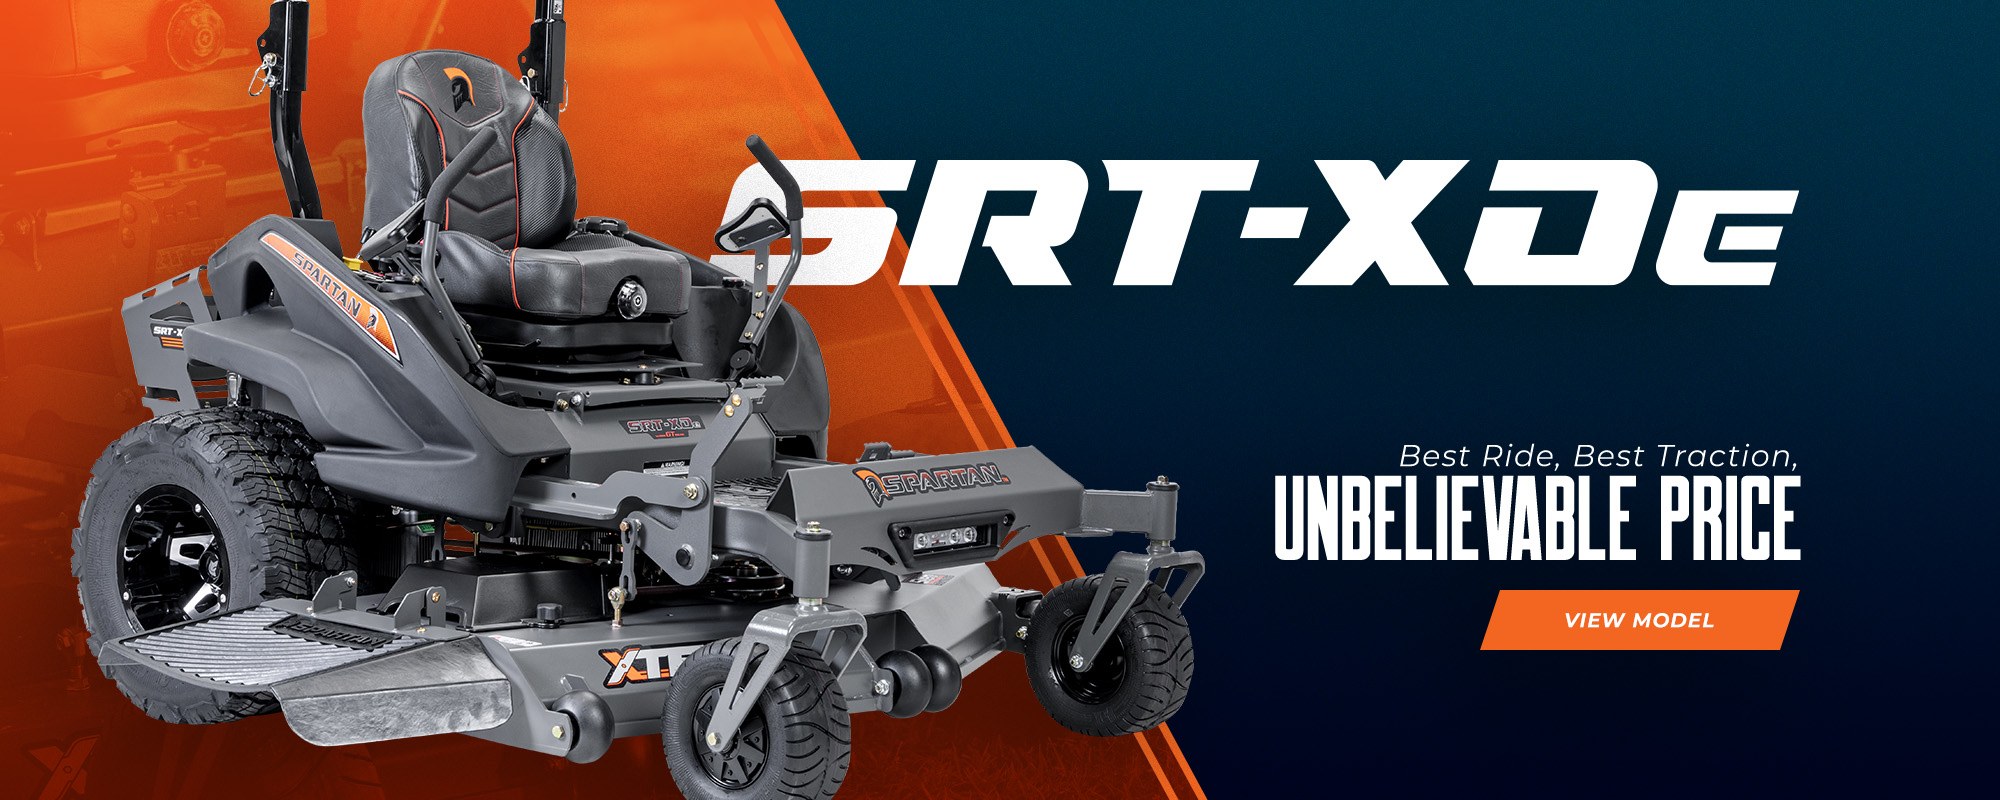 SRT-XDe Spartan ad